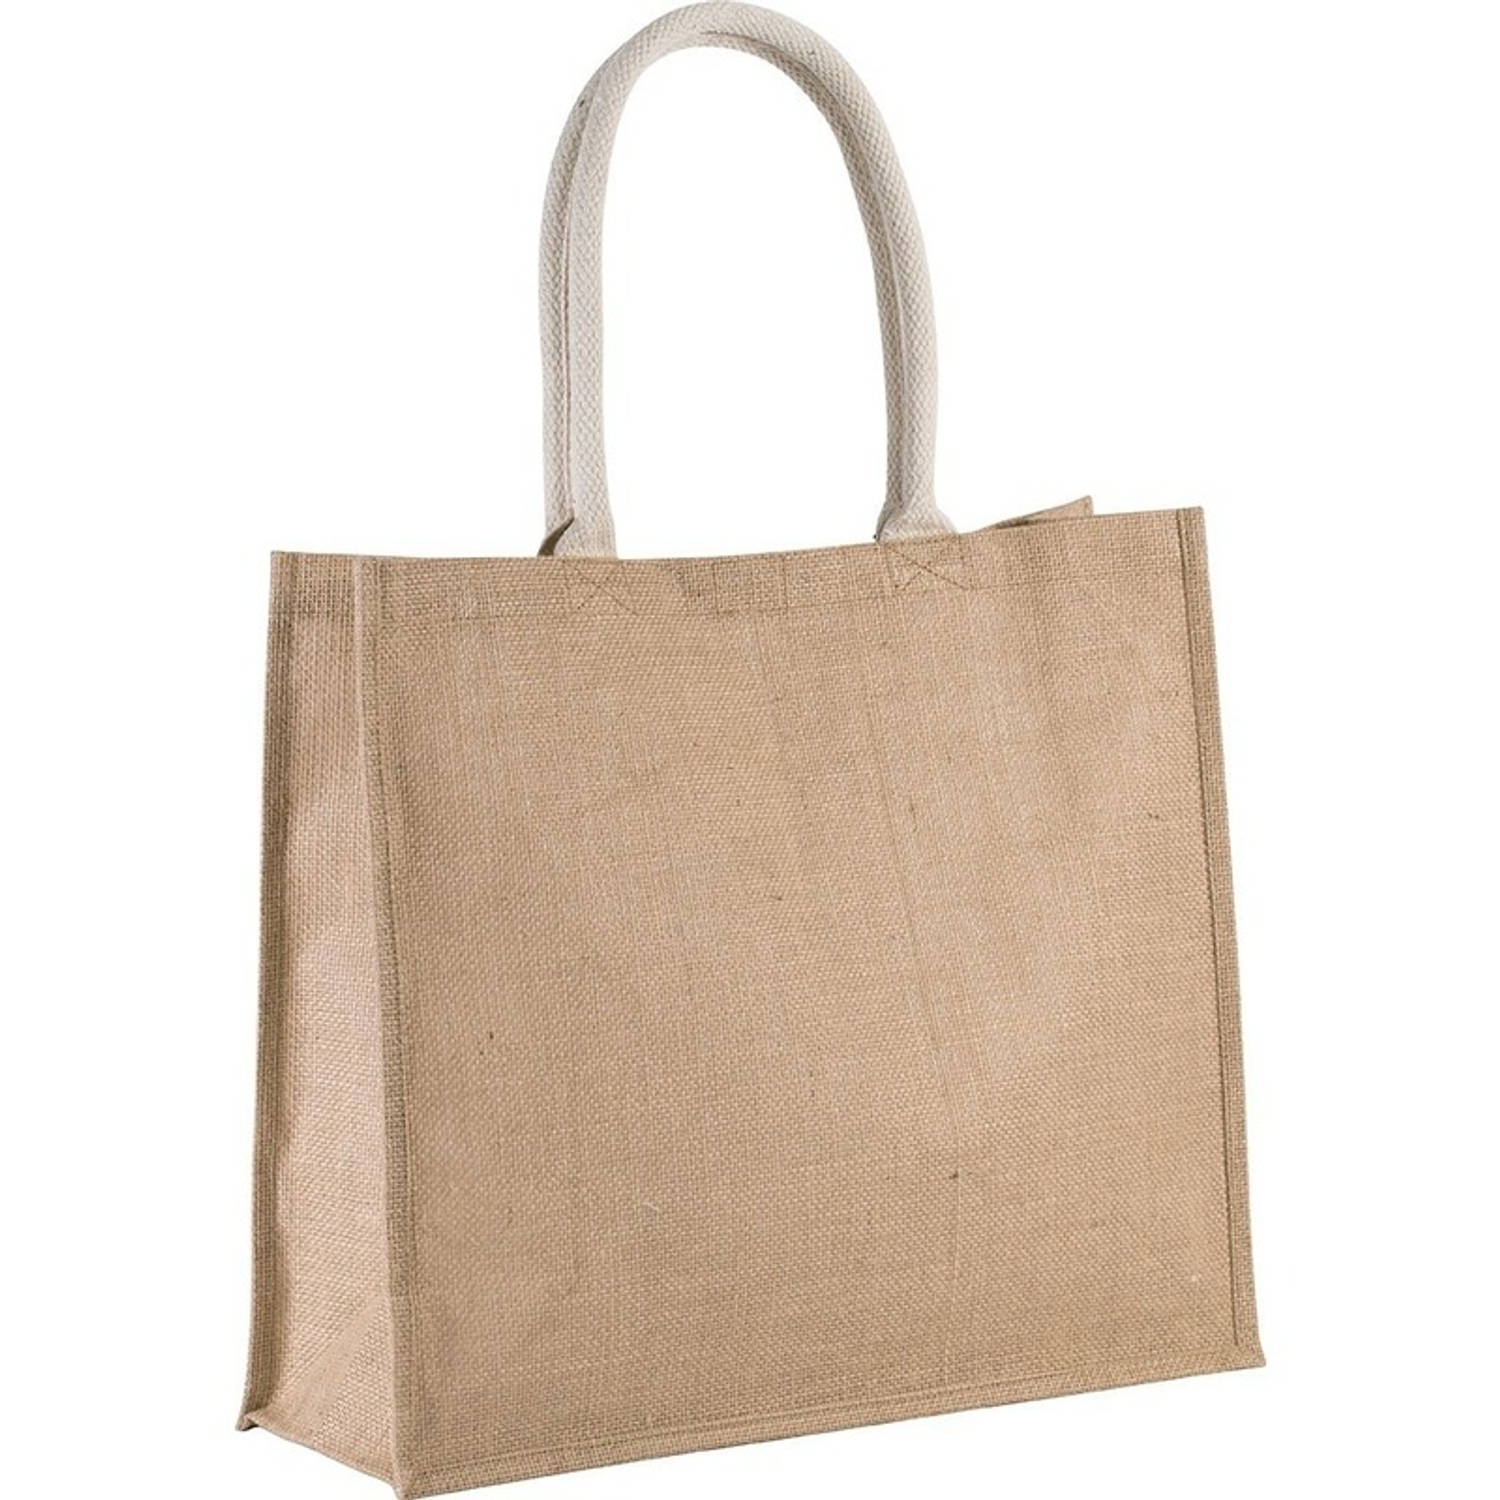 Naturel/beige jute shopper/boodschappentas 42 cm - Boodschappentassen